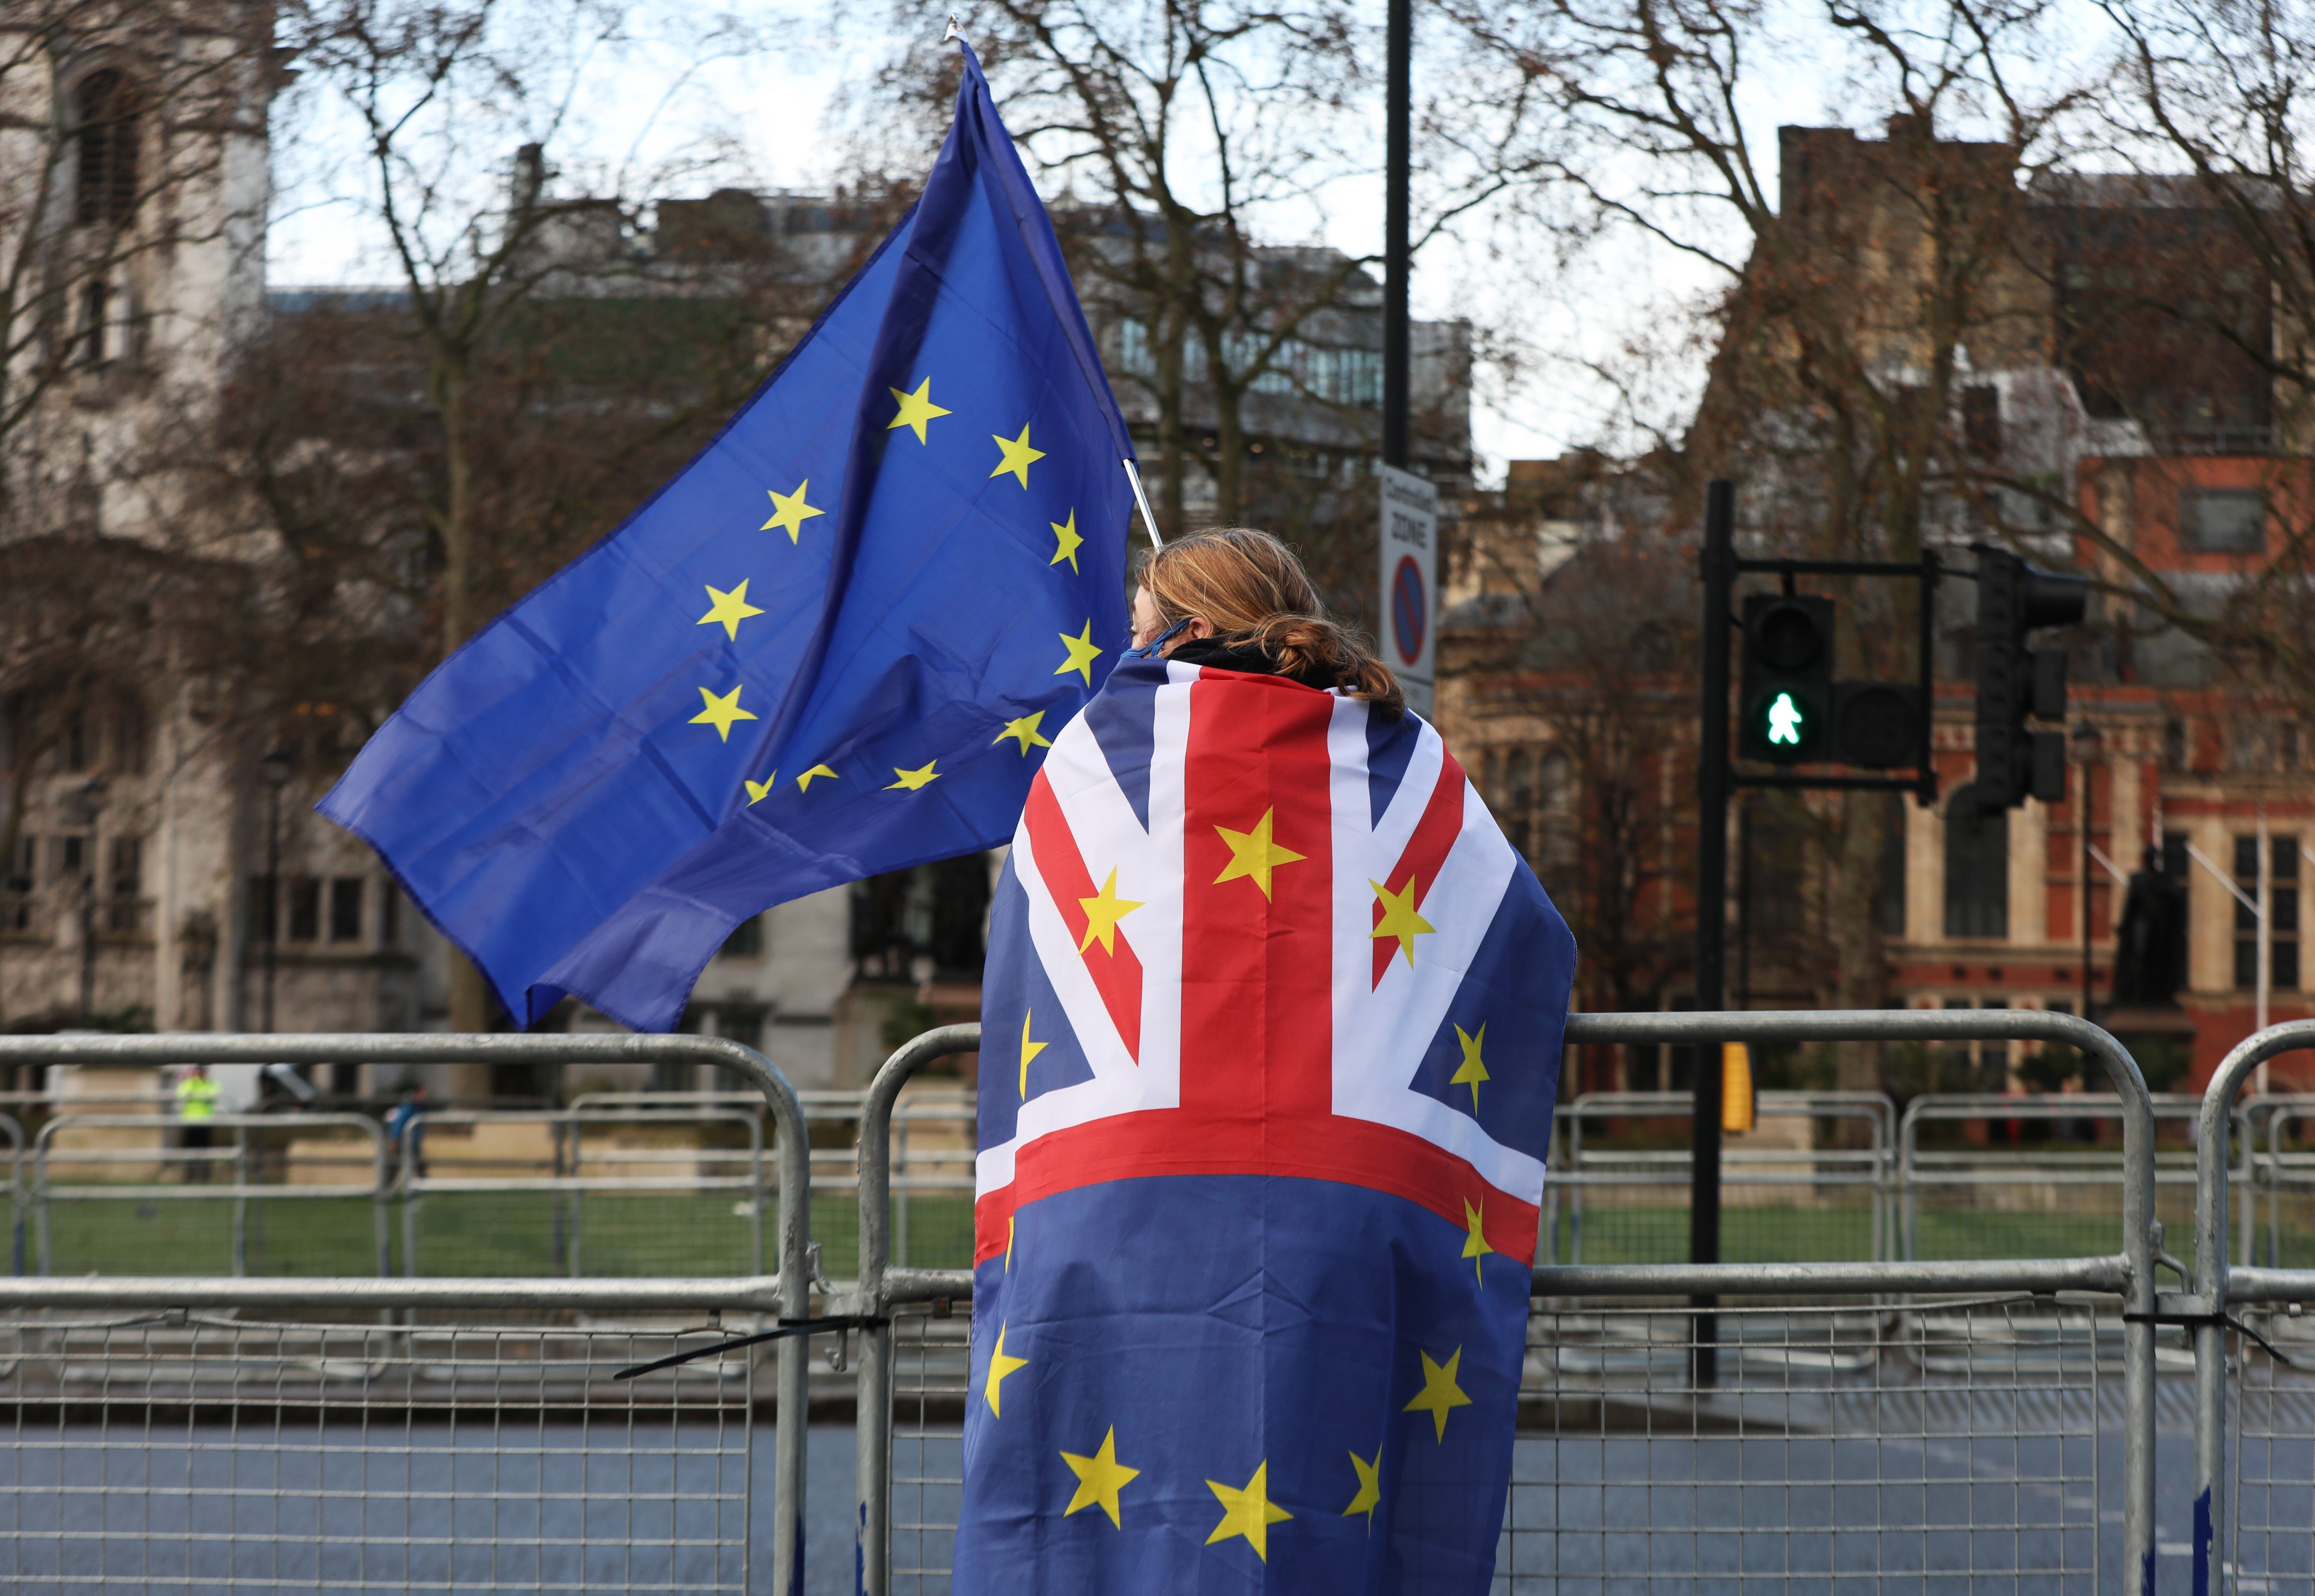 Acord entre la UE i el Regne Unit per al Brexit